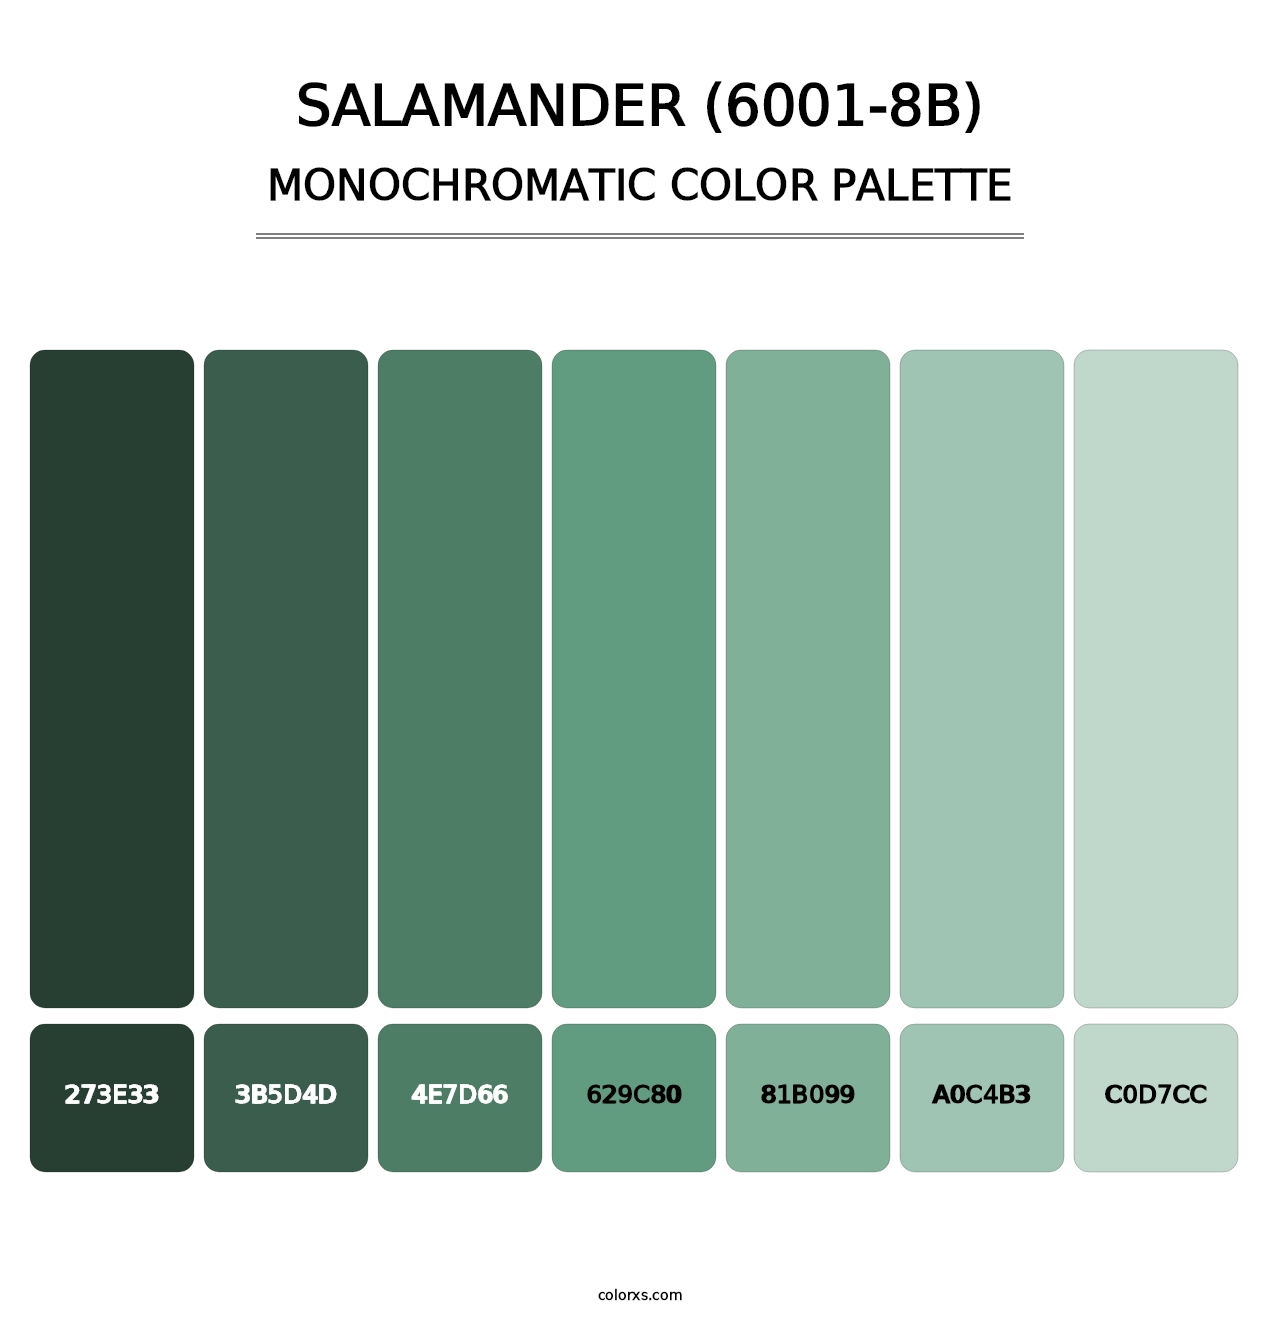 Salamander (6001-8B) - Monochromatic Color Palette